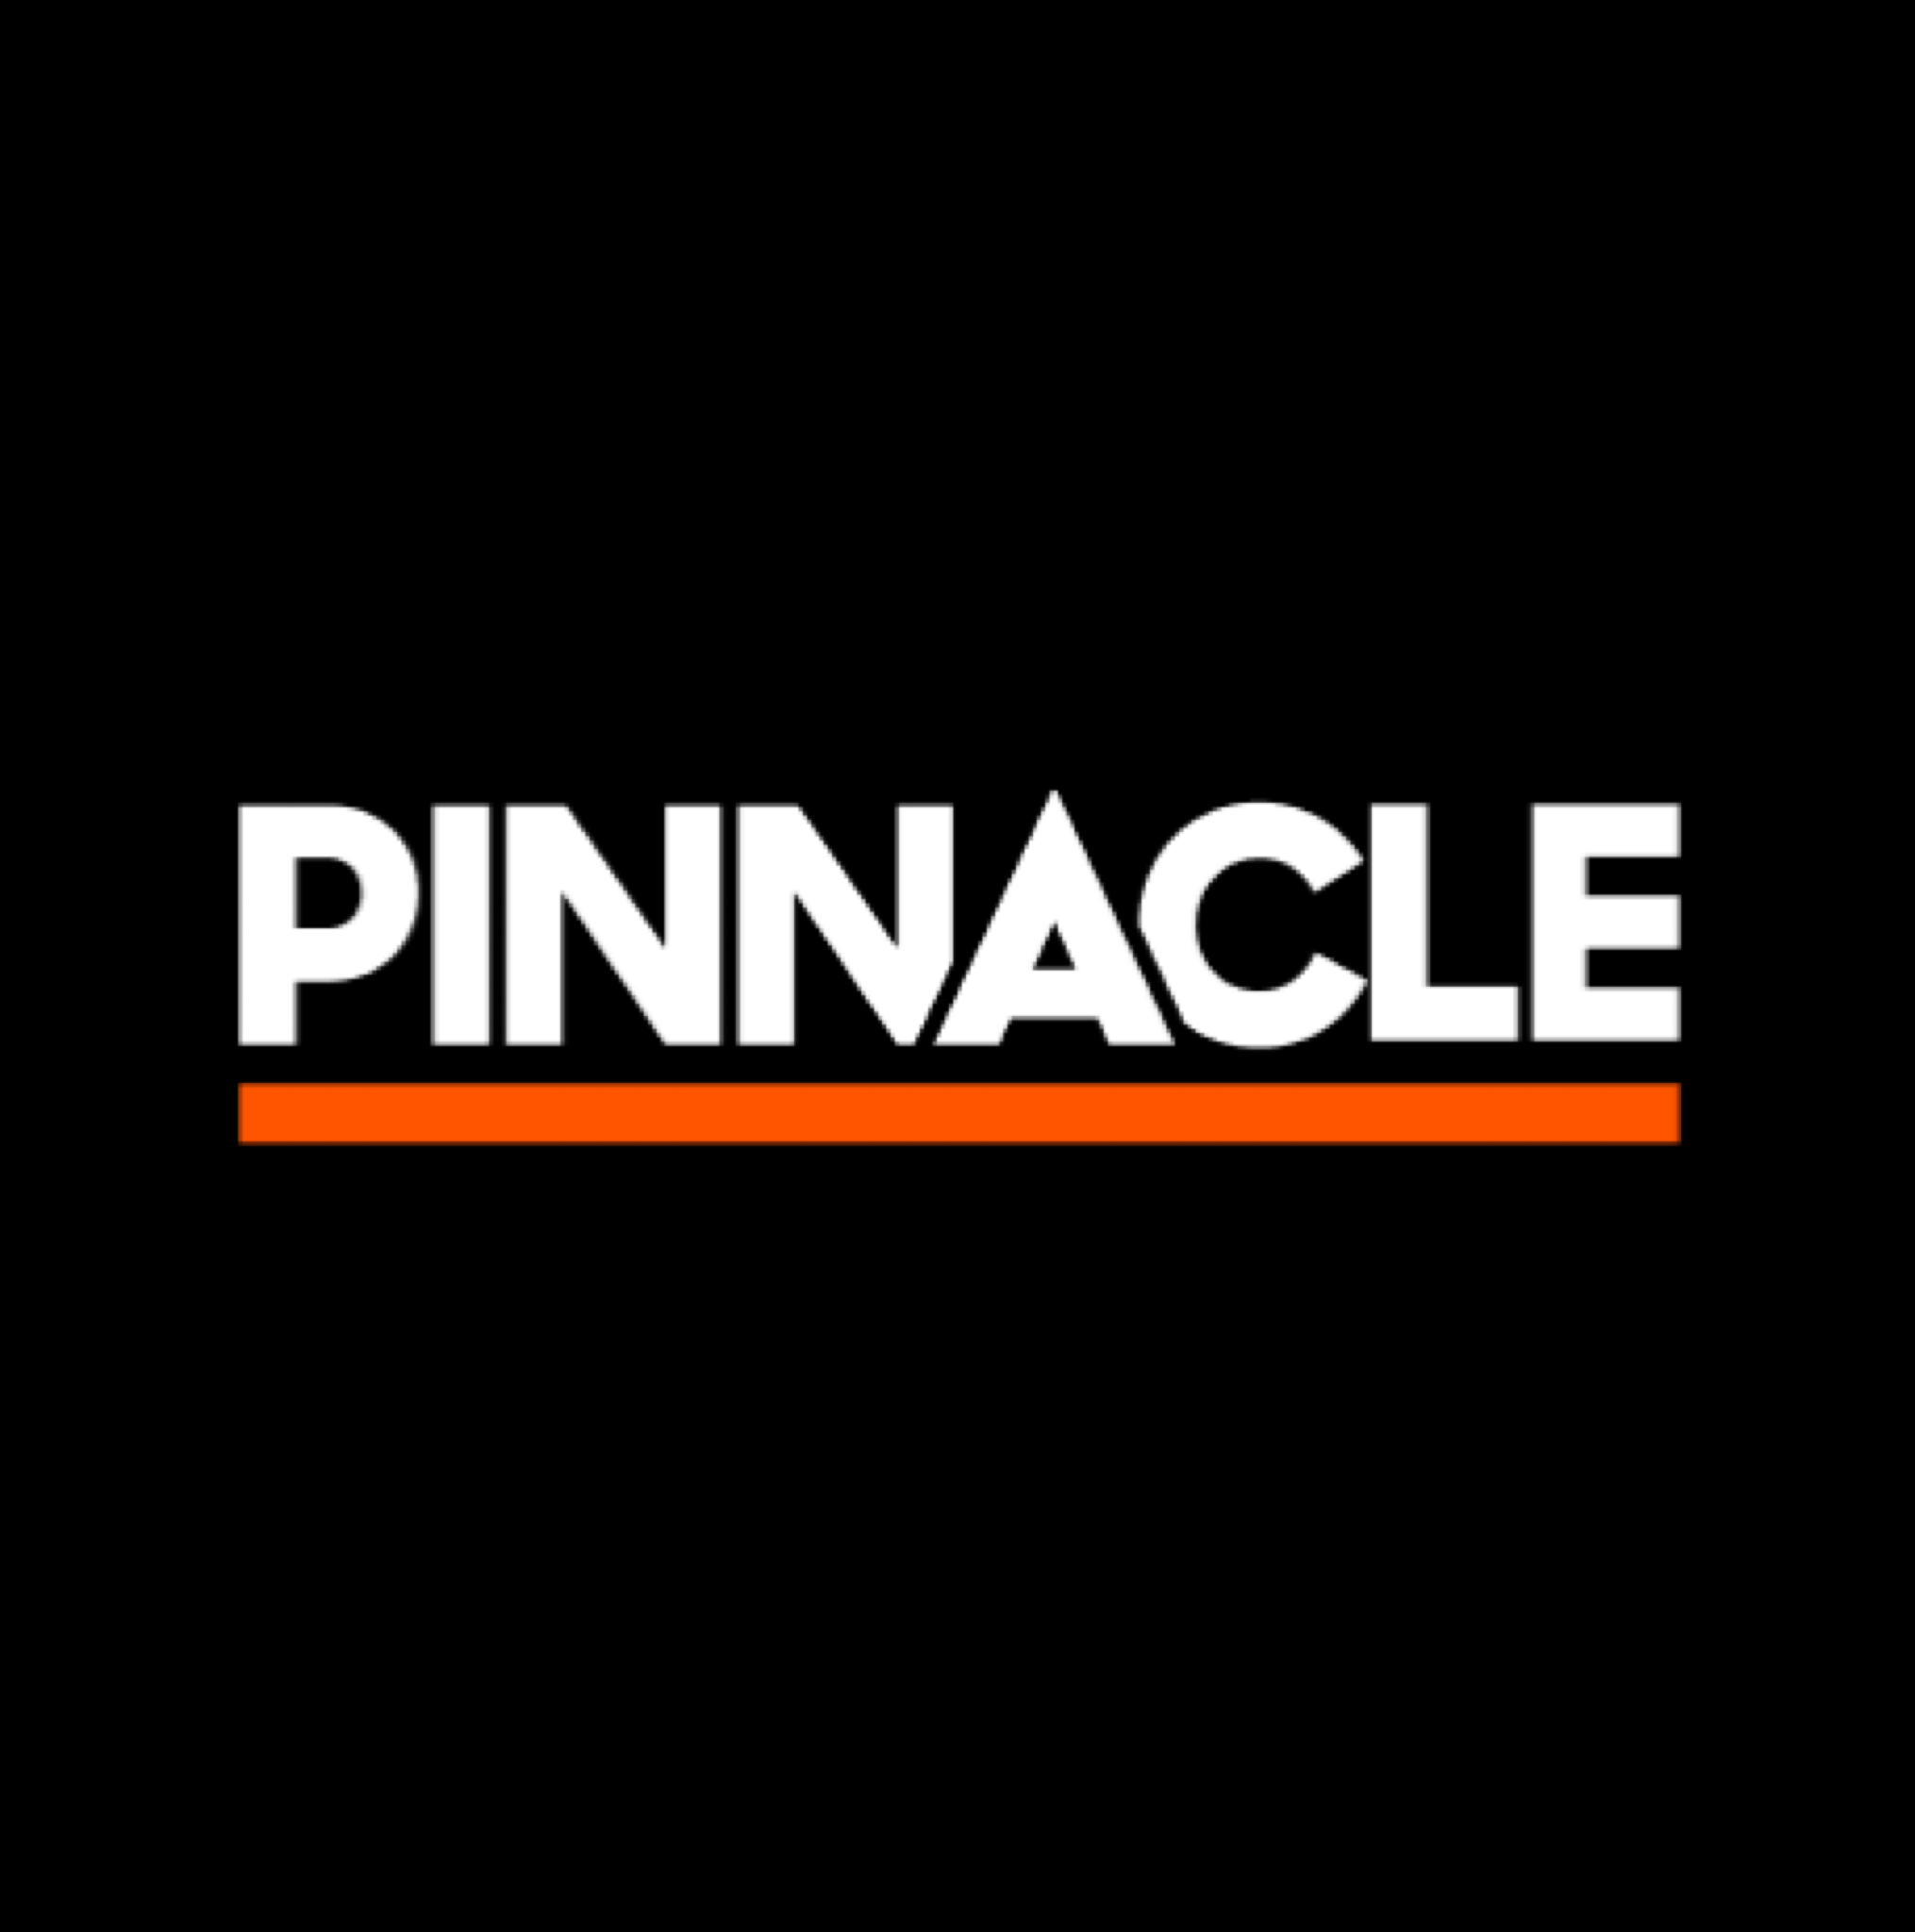 PINNACLE(ピナクル)アイコンの画像